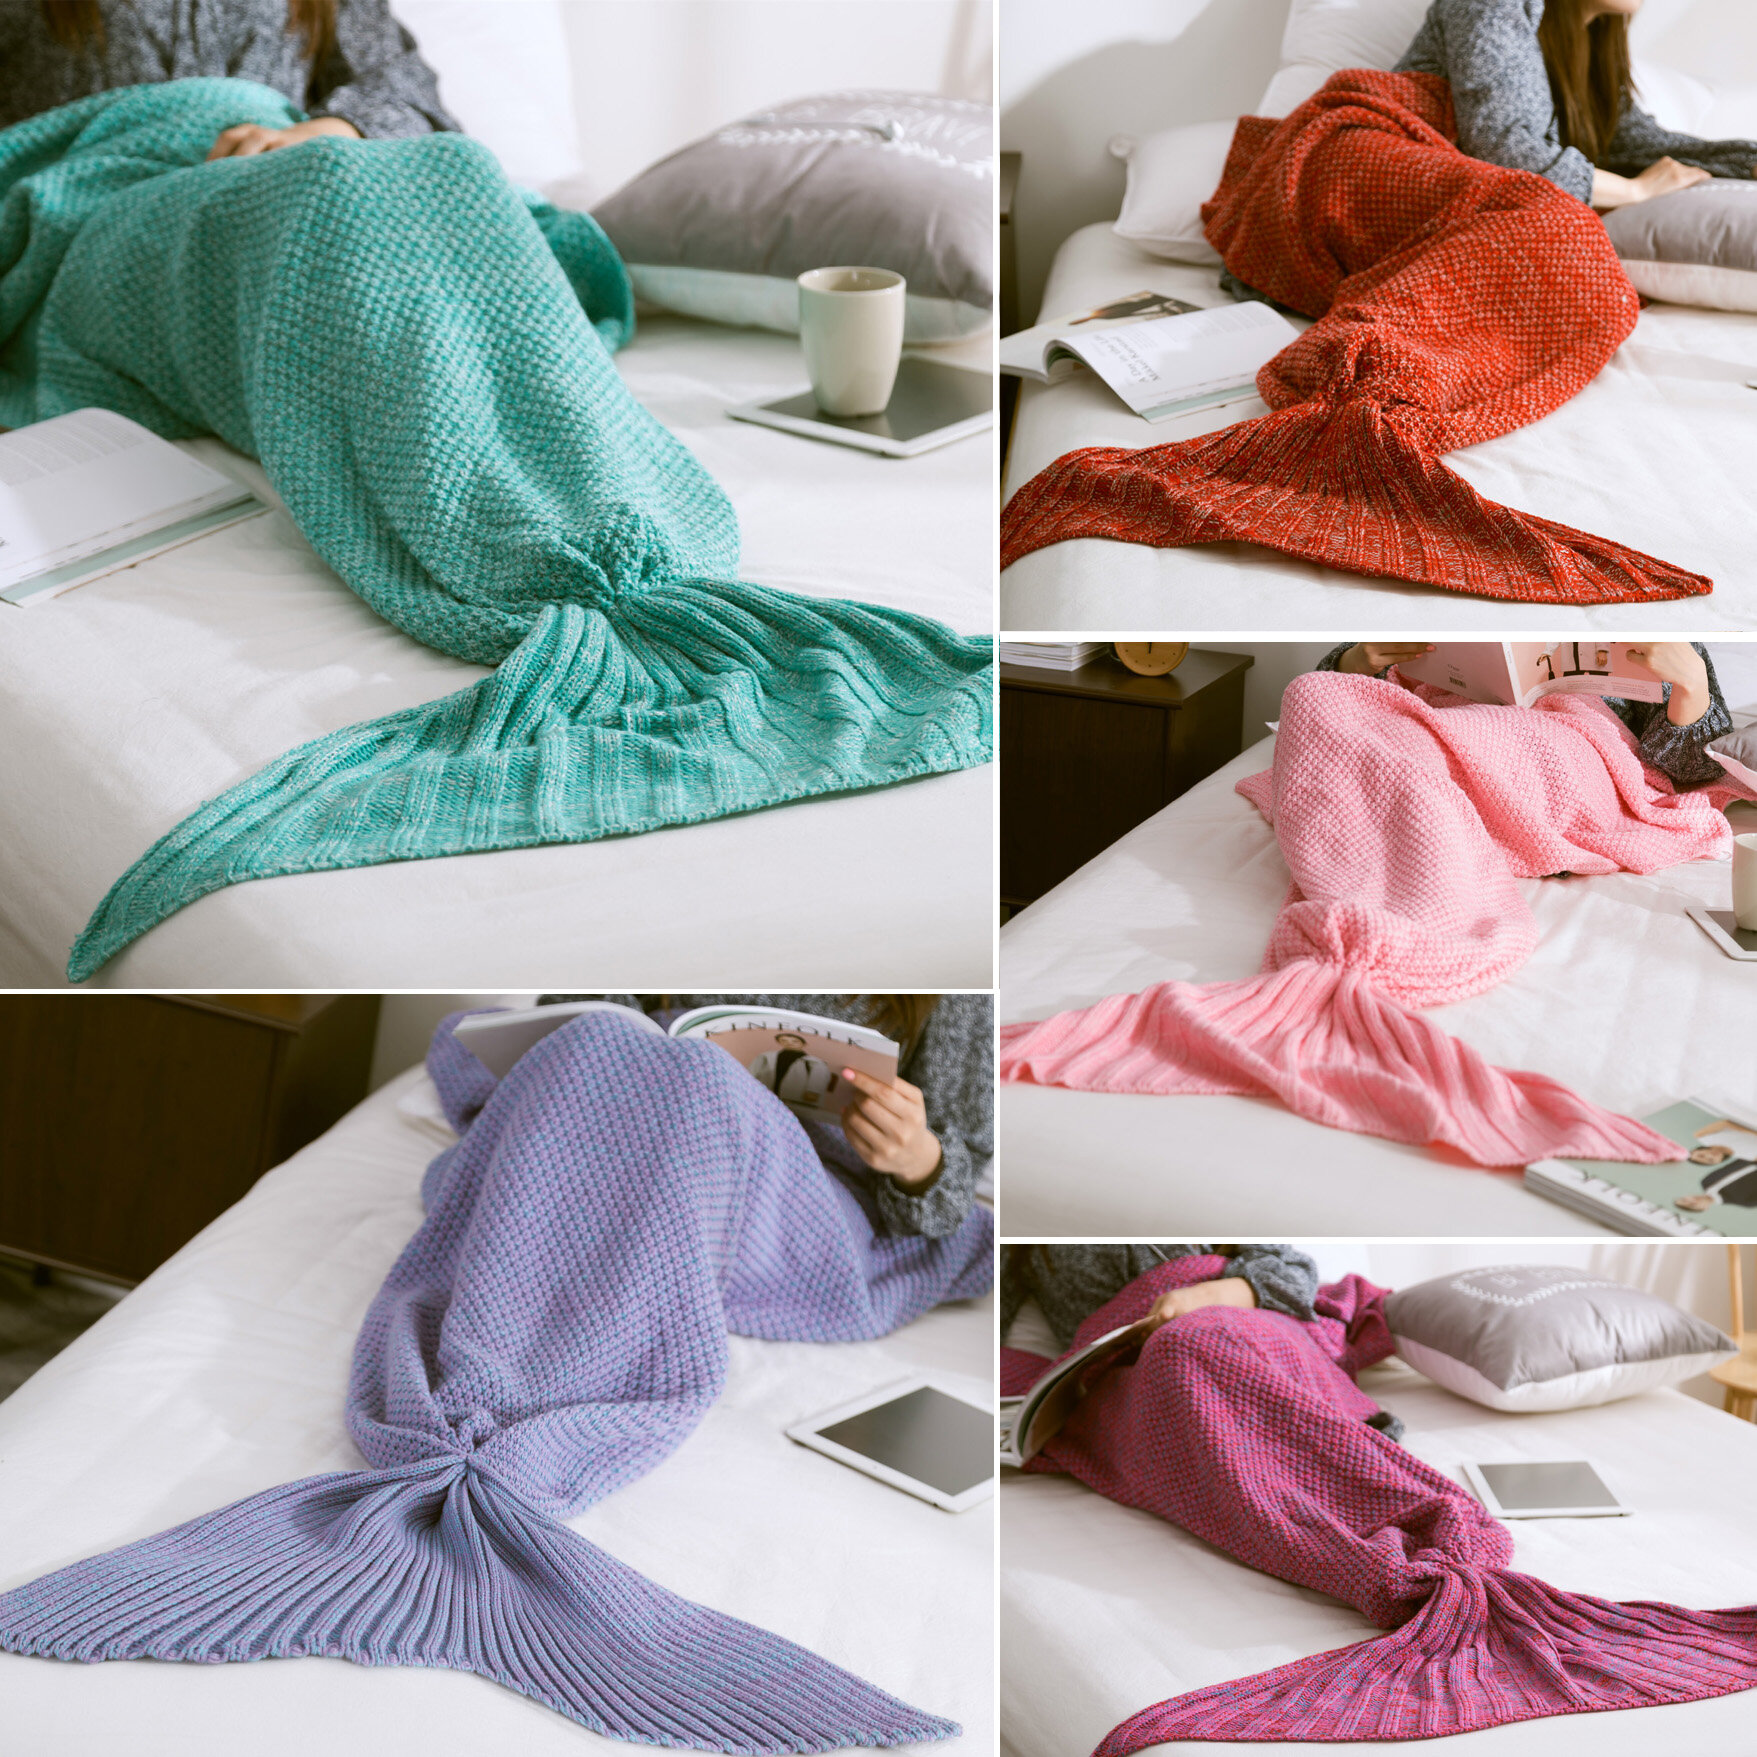 Fibra de malha de tricô Fibras de cobertura de cauda da sereia Warm Super Soft Home Office Bolsa de dormir Malha de cama